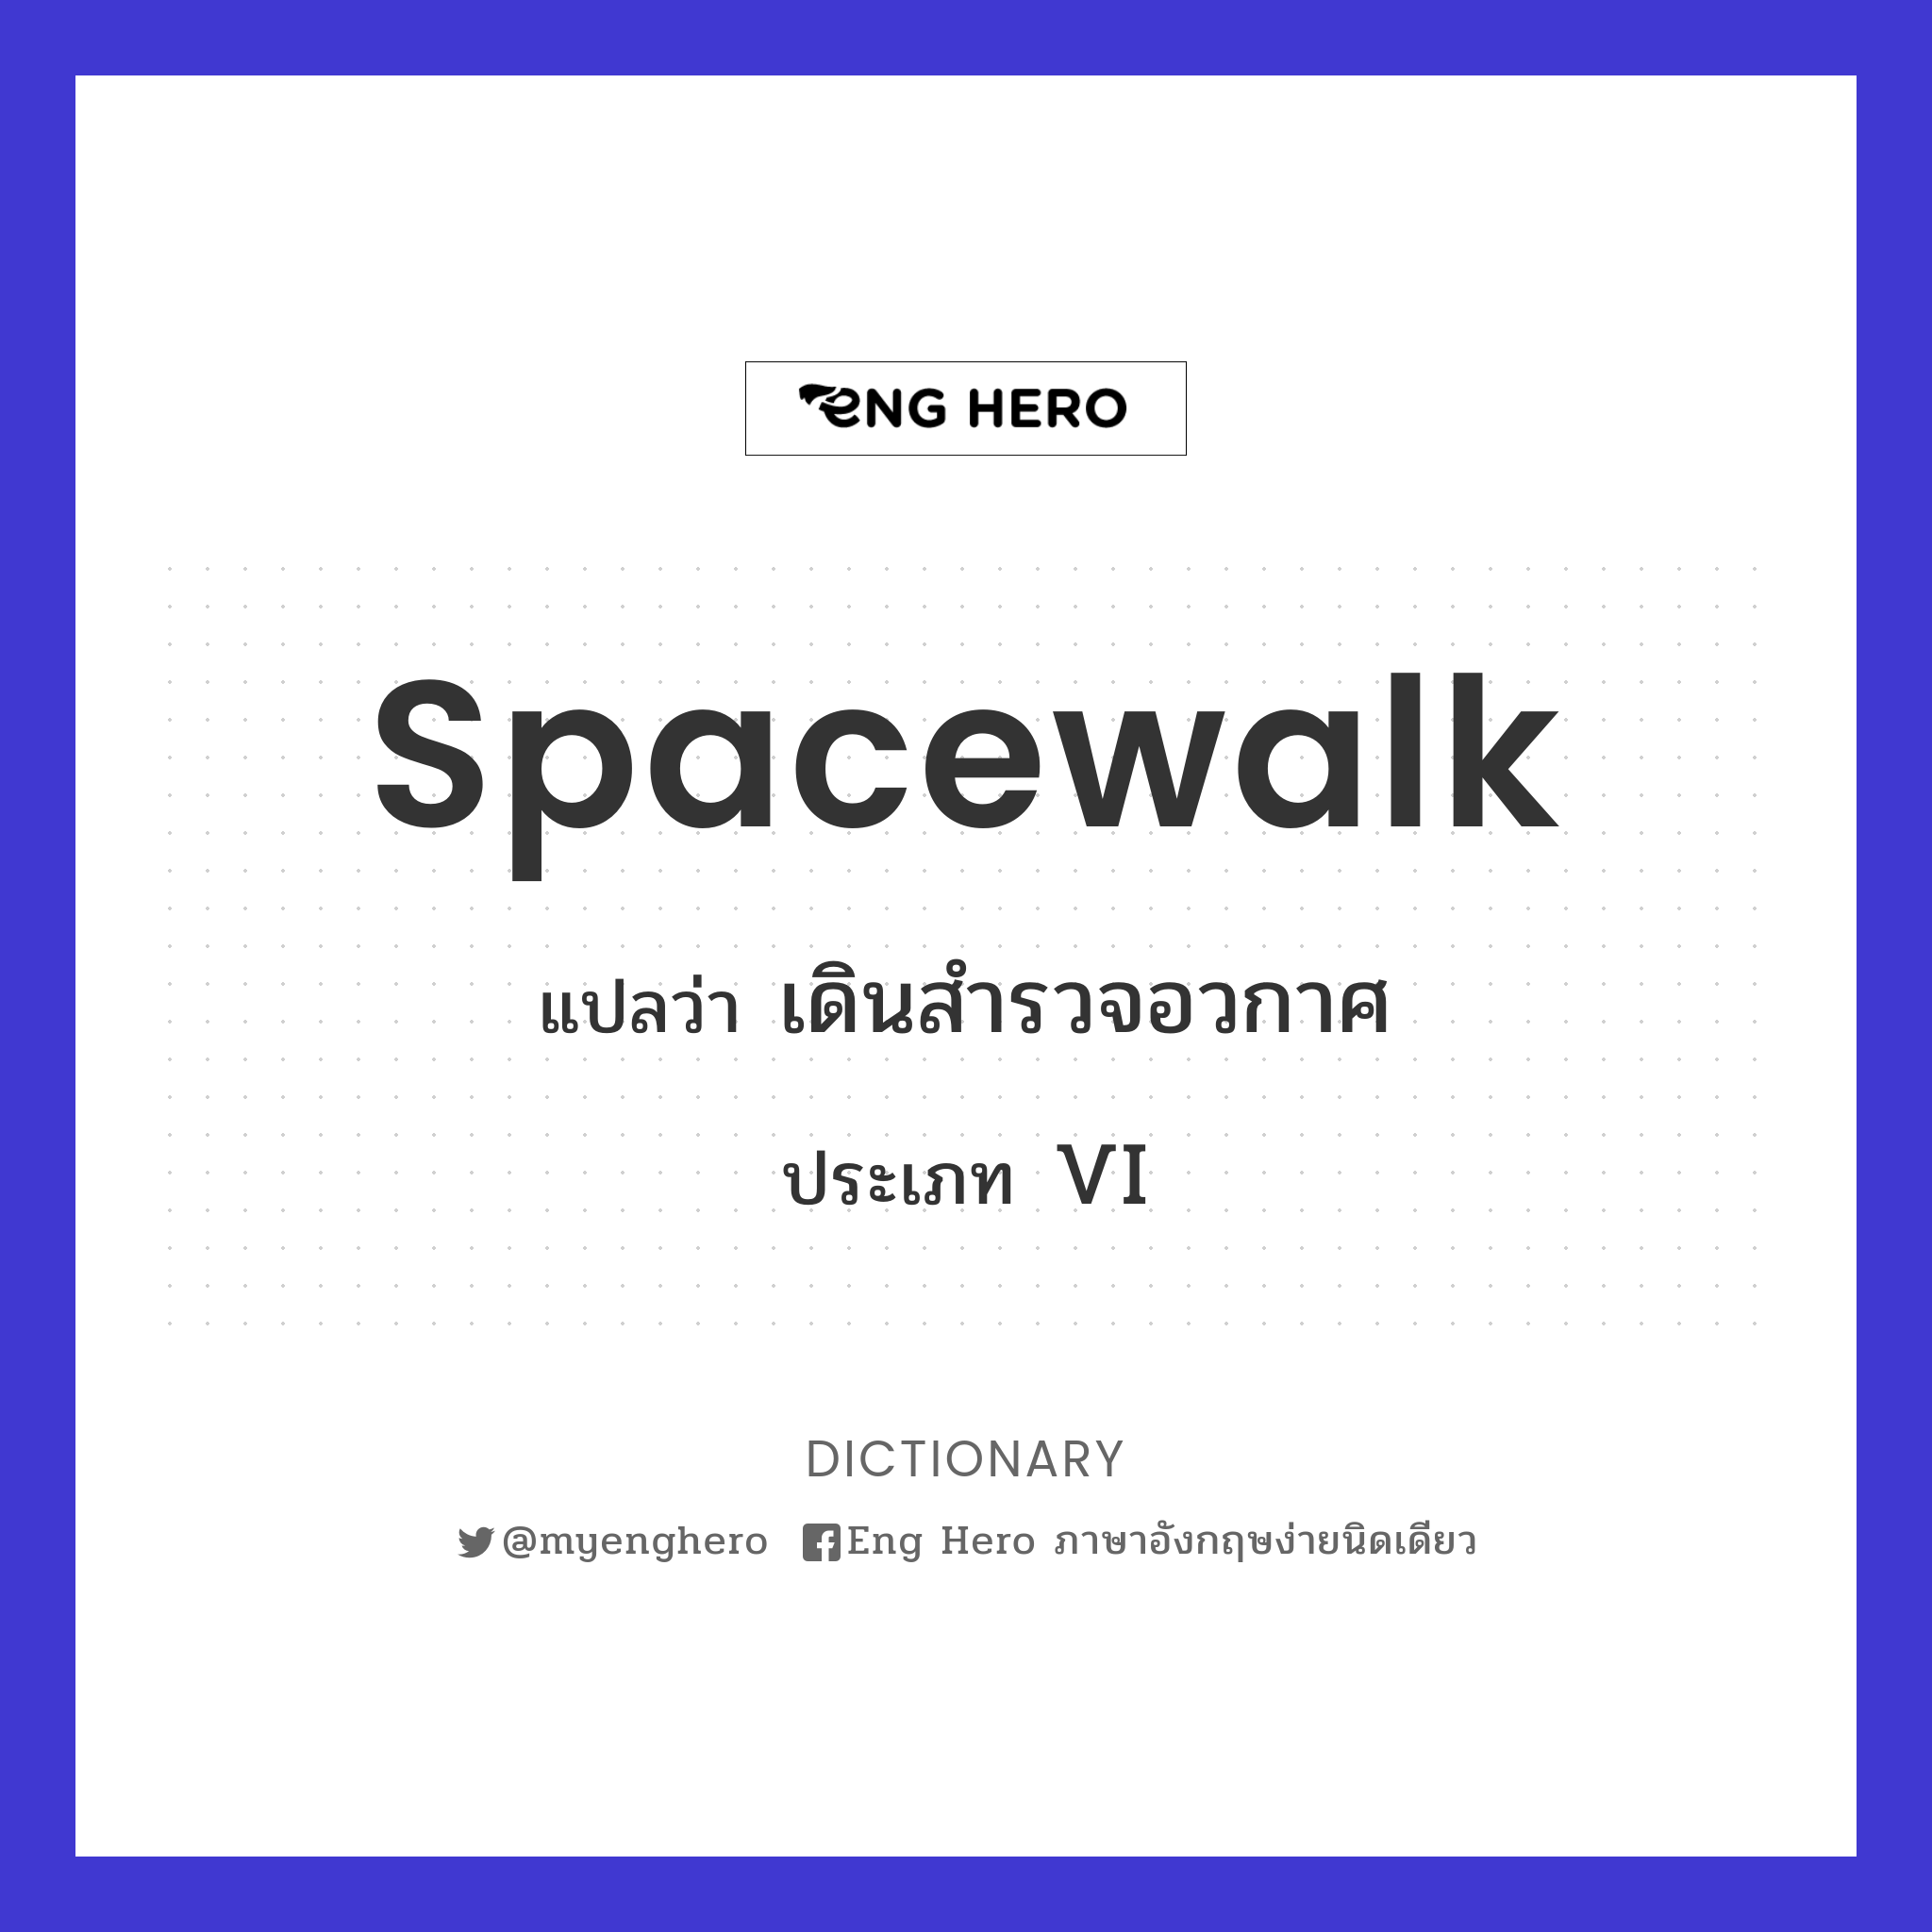 spacewalk